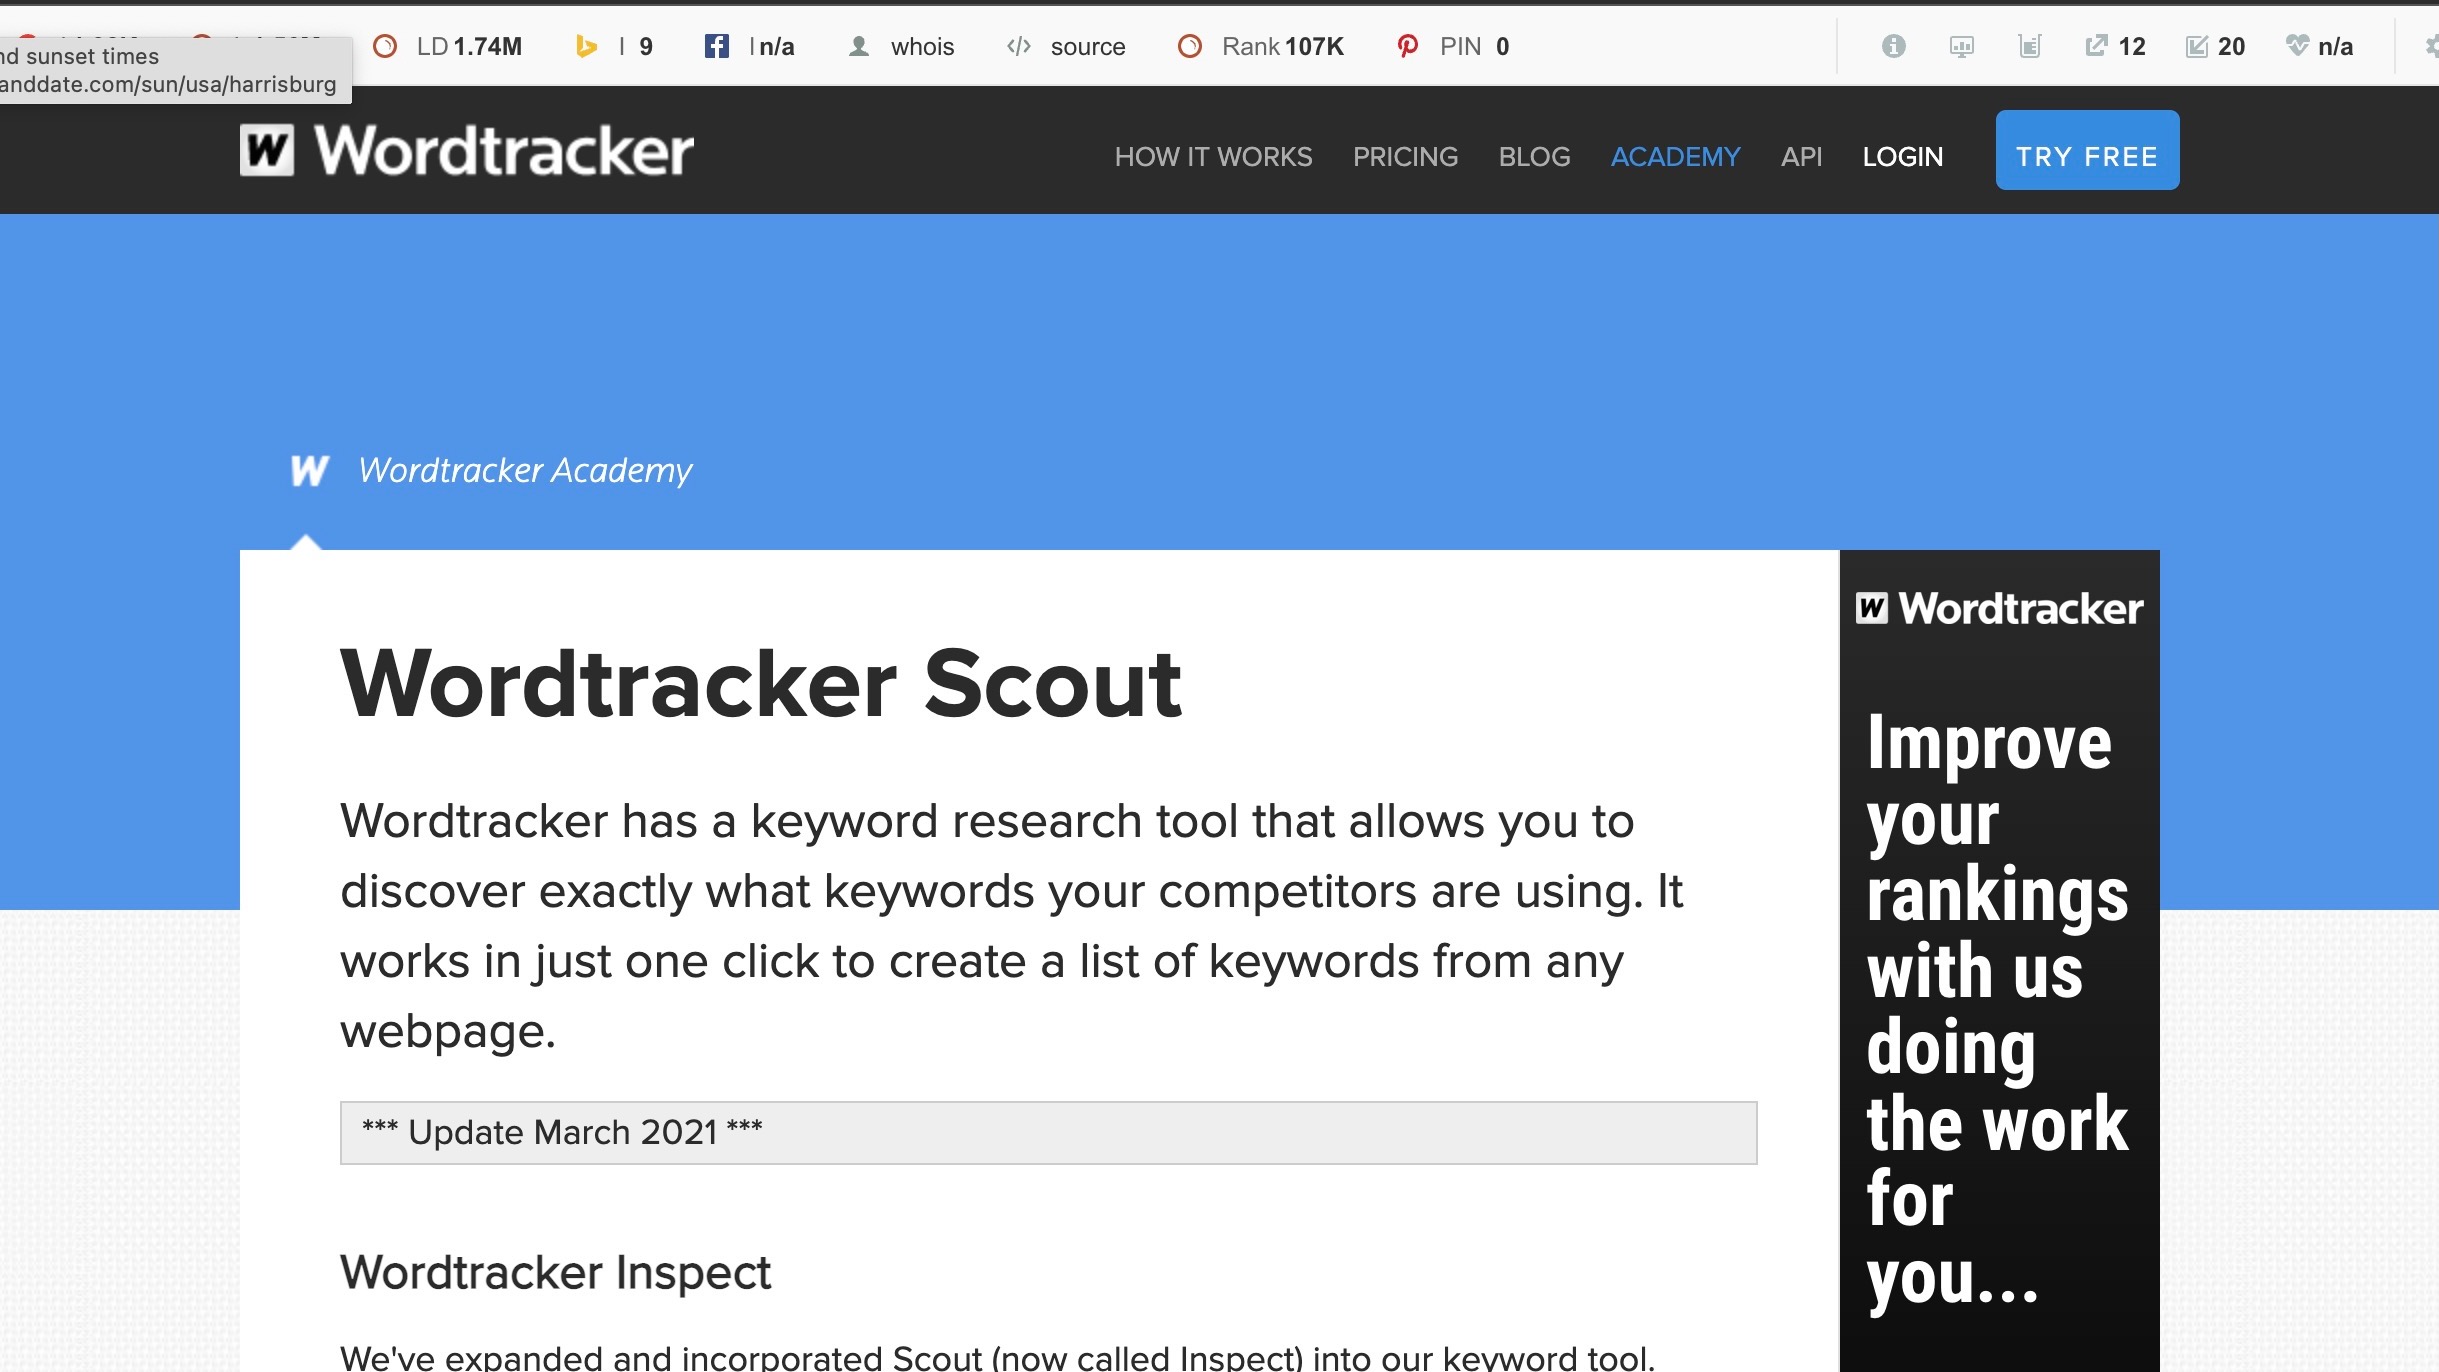 Wordtracker Scout